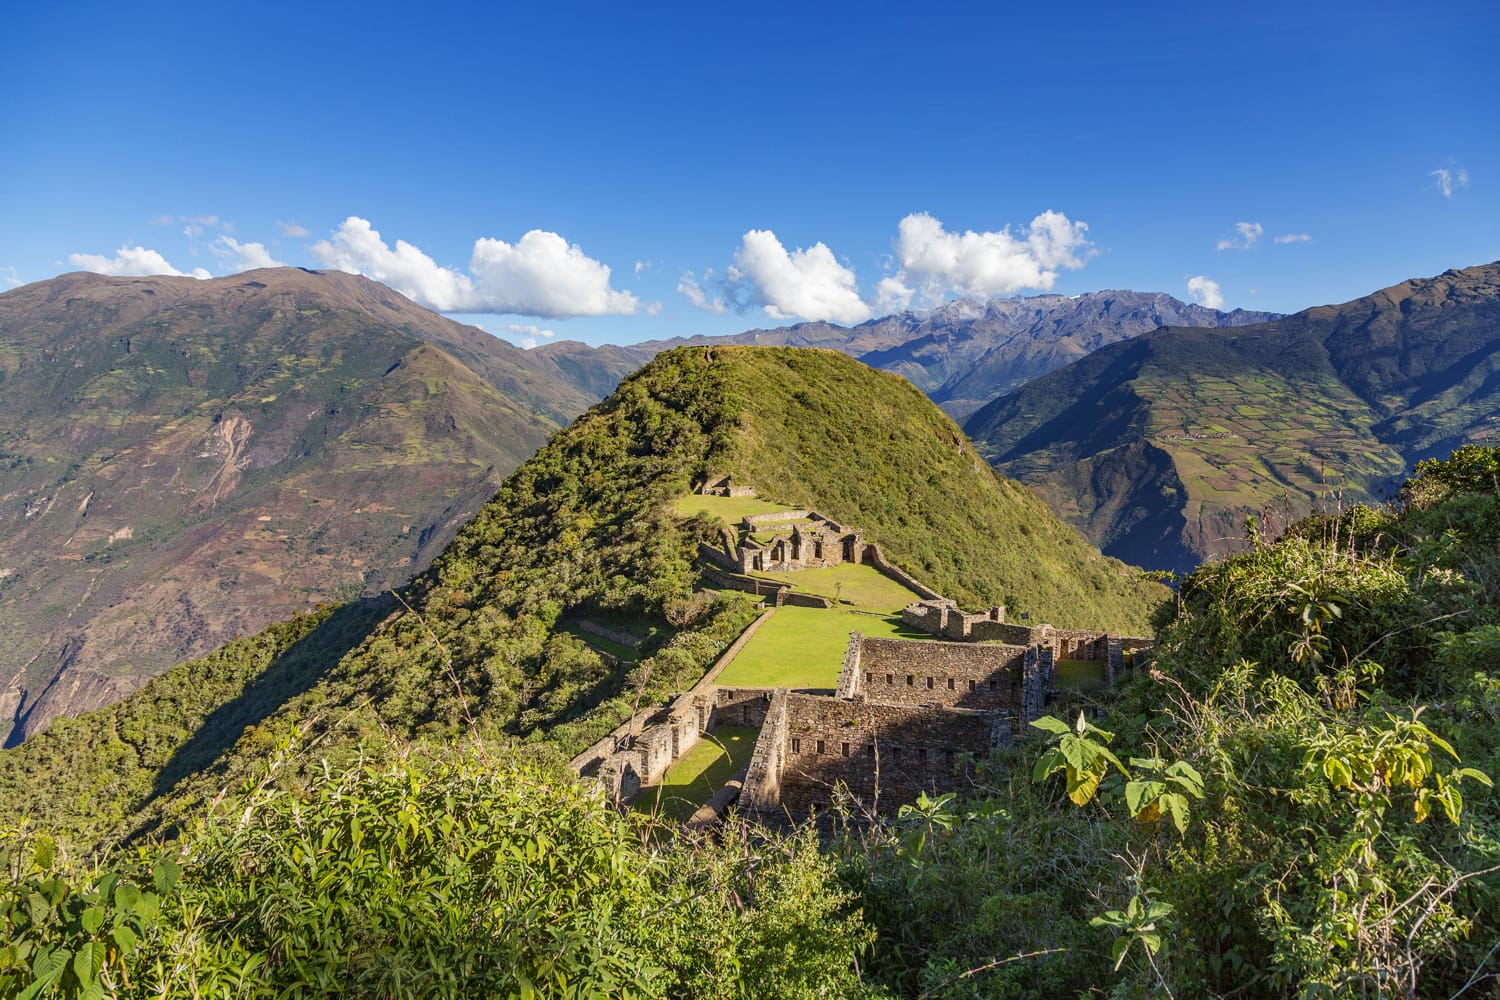 Choquequirao Inca city in Peru